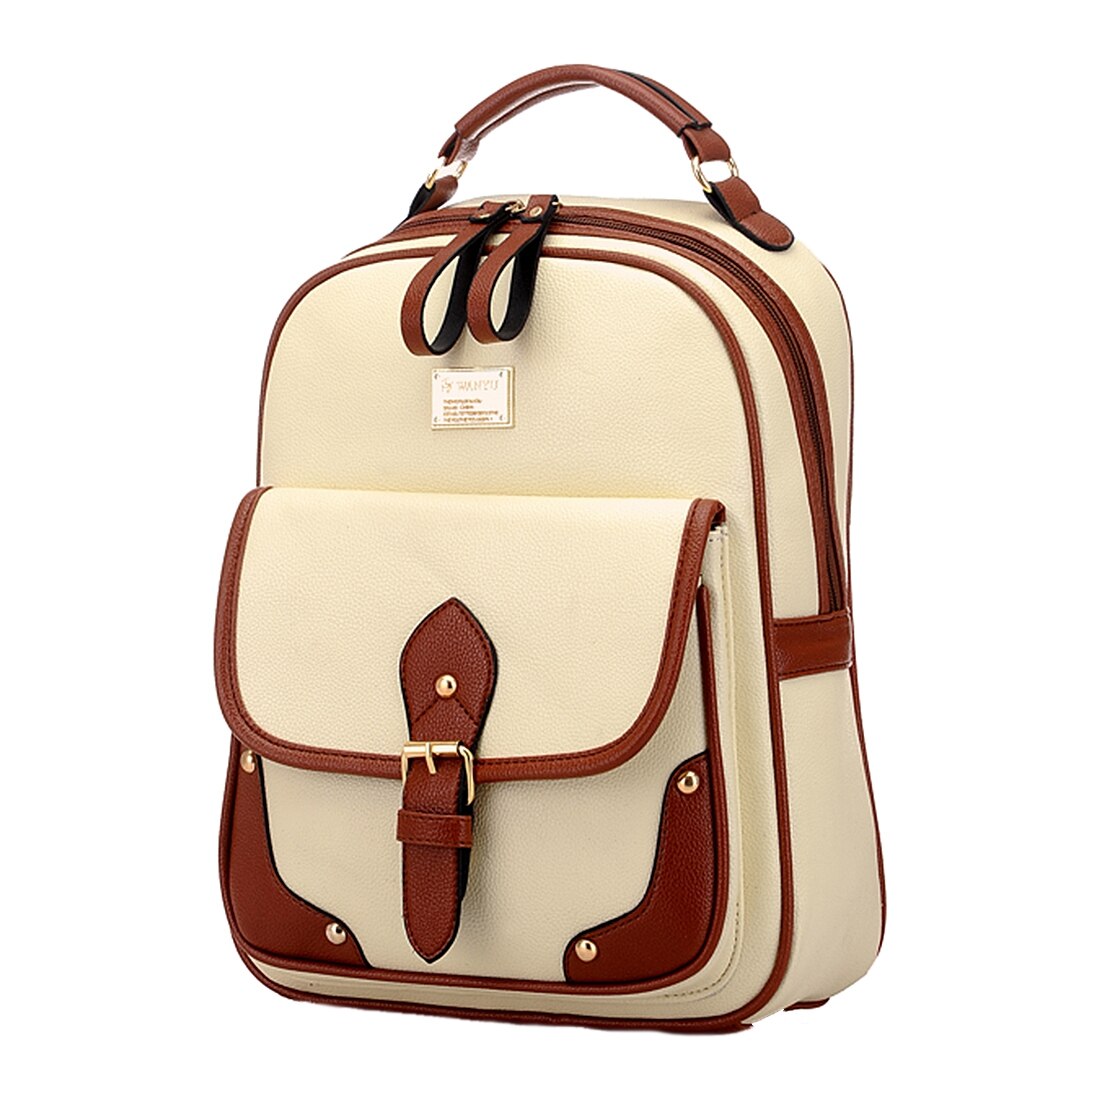 Vintage Leather Backpack Rucksack Shoulder Travel School Bag Knapsack Brown - ebowsos